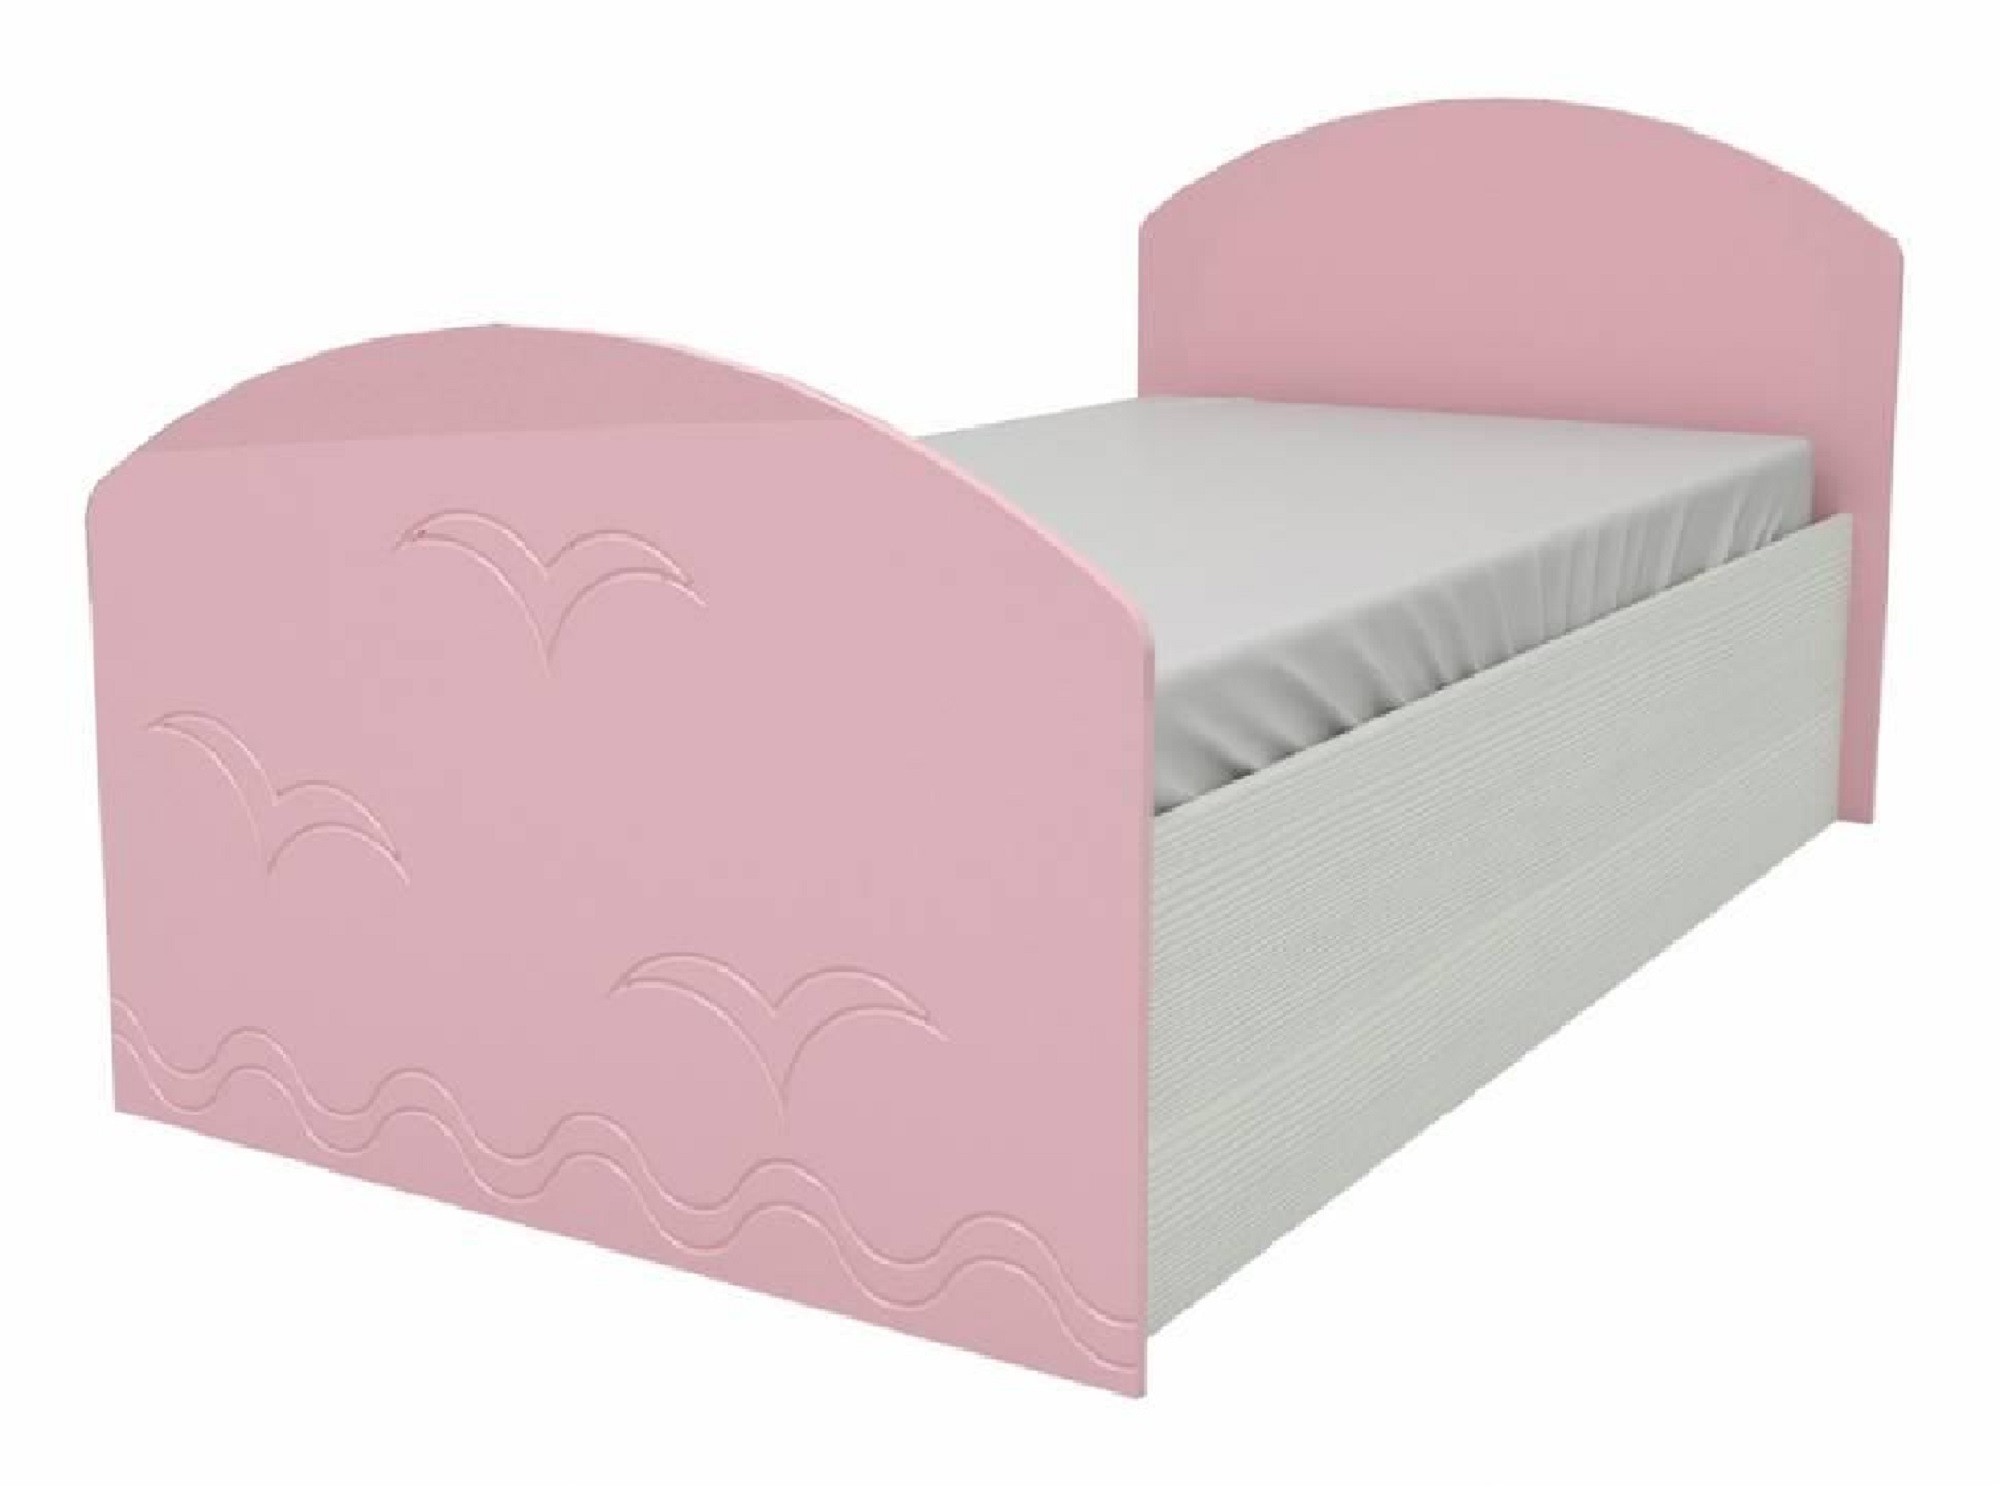 Юниор-2 Детская кровать 80, металлик (Розовый металлик, Дуб белёный) Розовый металлик, МДФ, ЛДСП детская кровать дельфин 80х200 синий металлик дуб белёный синий металлик мдф лдсп